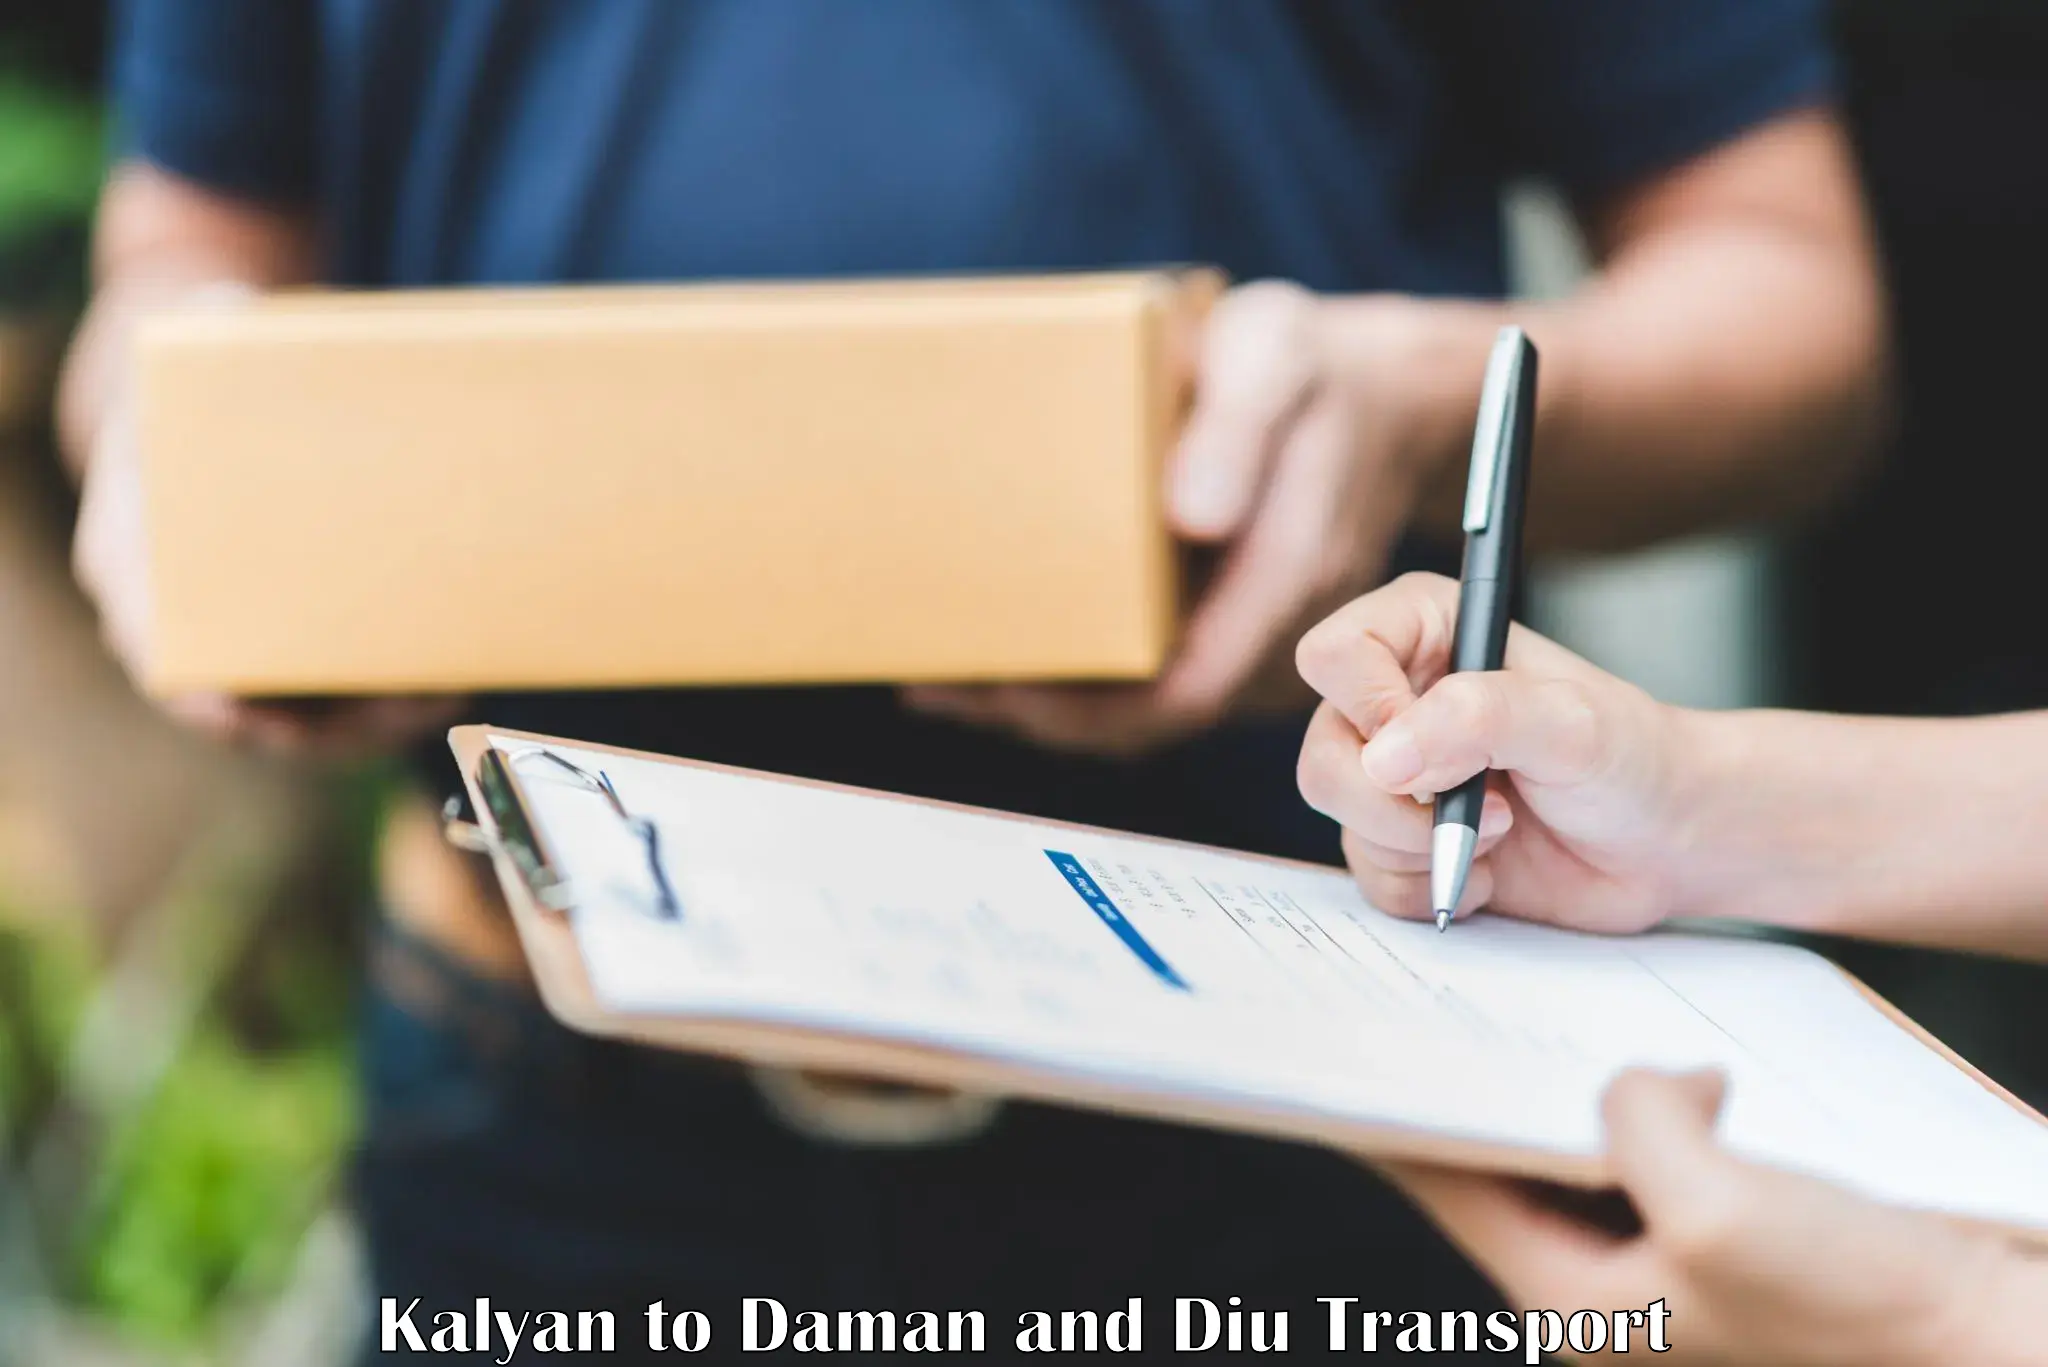 Lorry transport service Kalyan to Daman